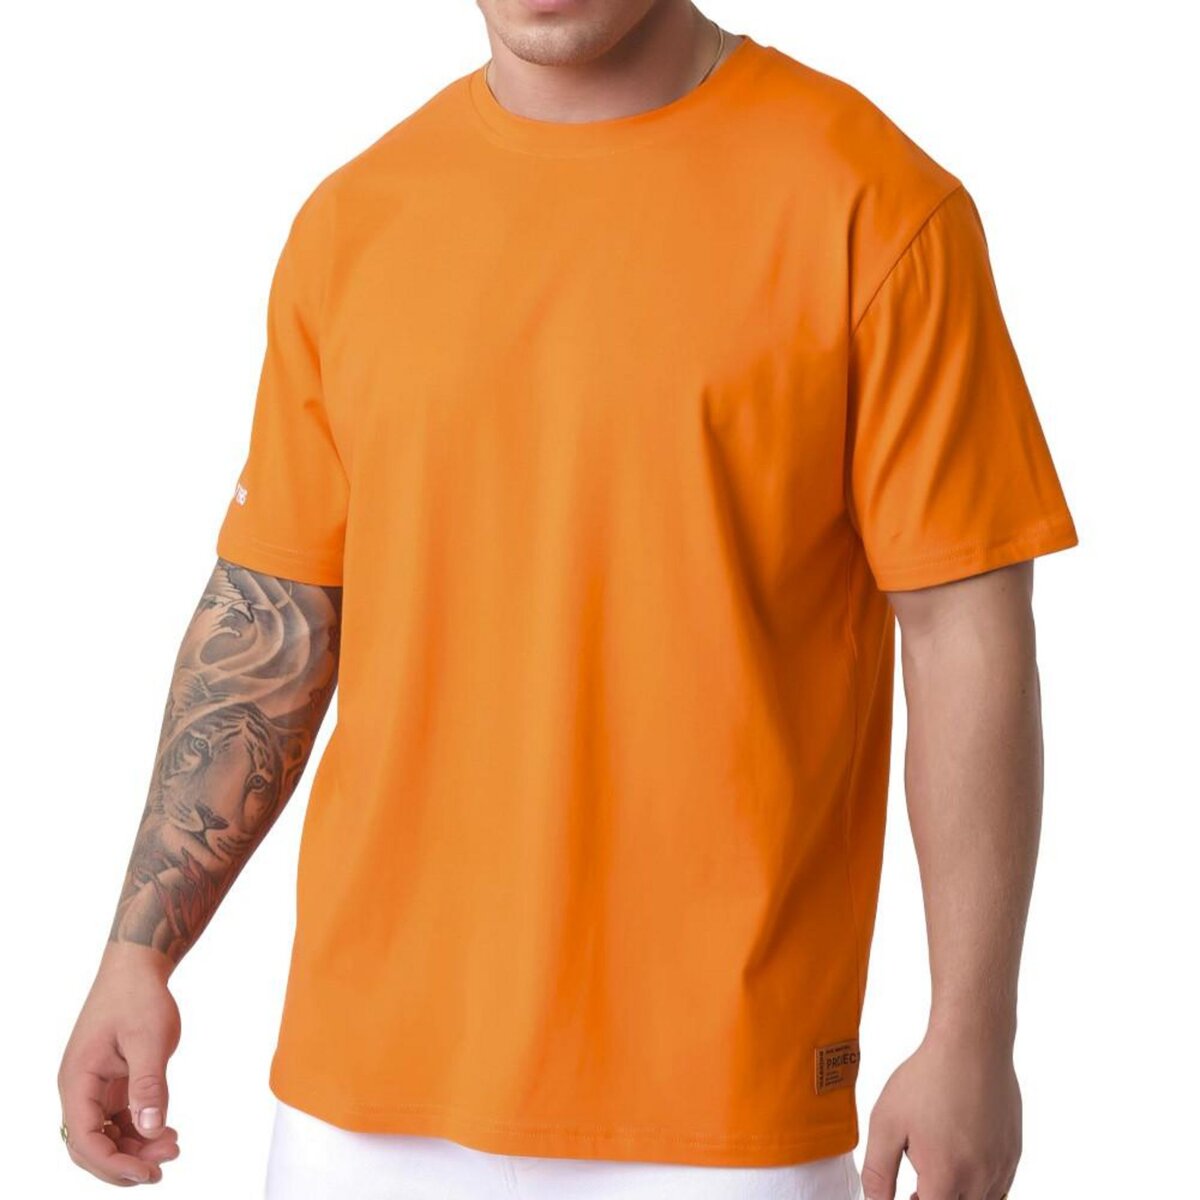  T-shirt Orange Homme Project X Paris Homme 2110156